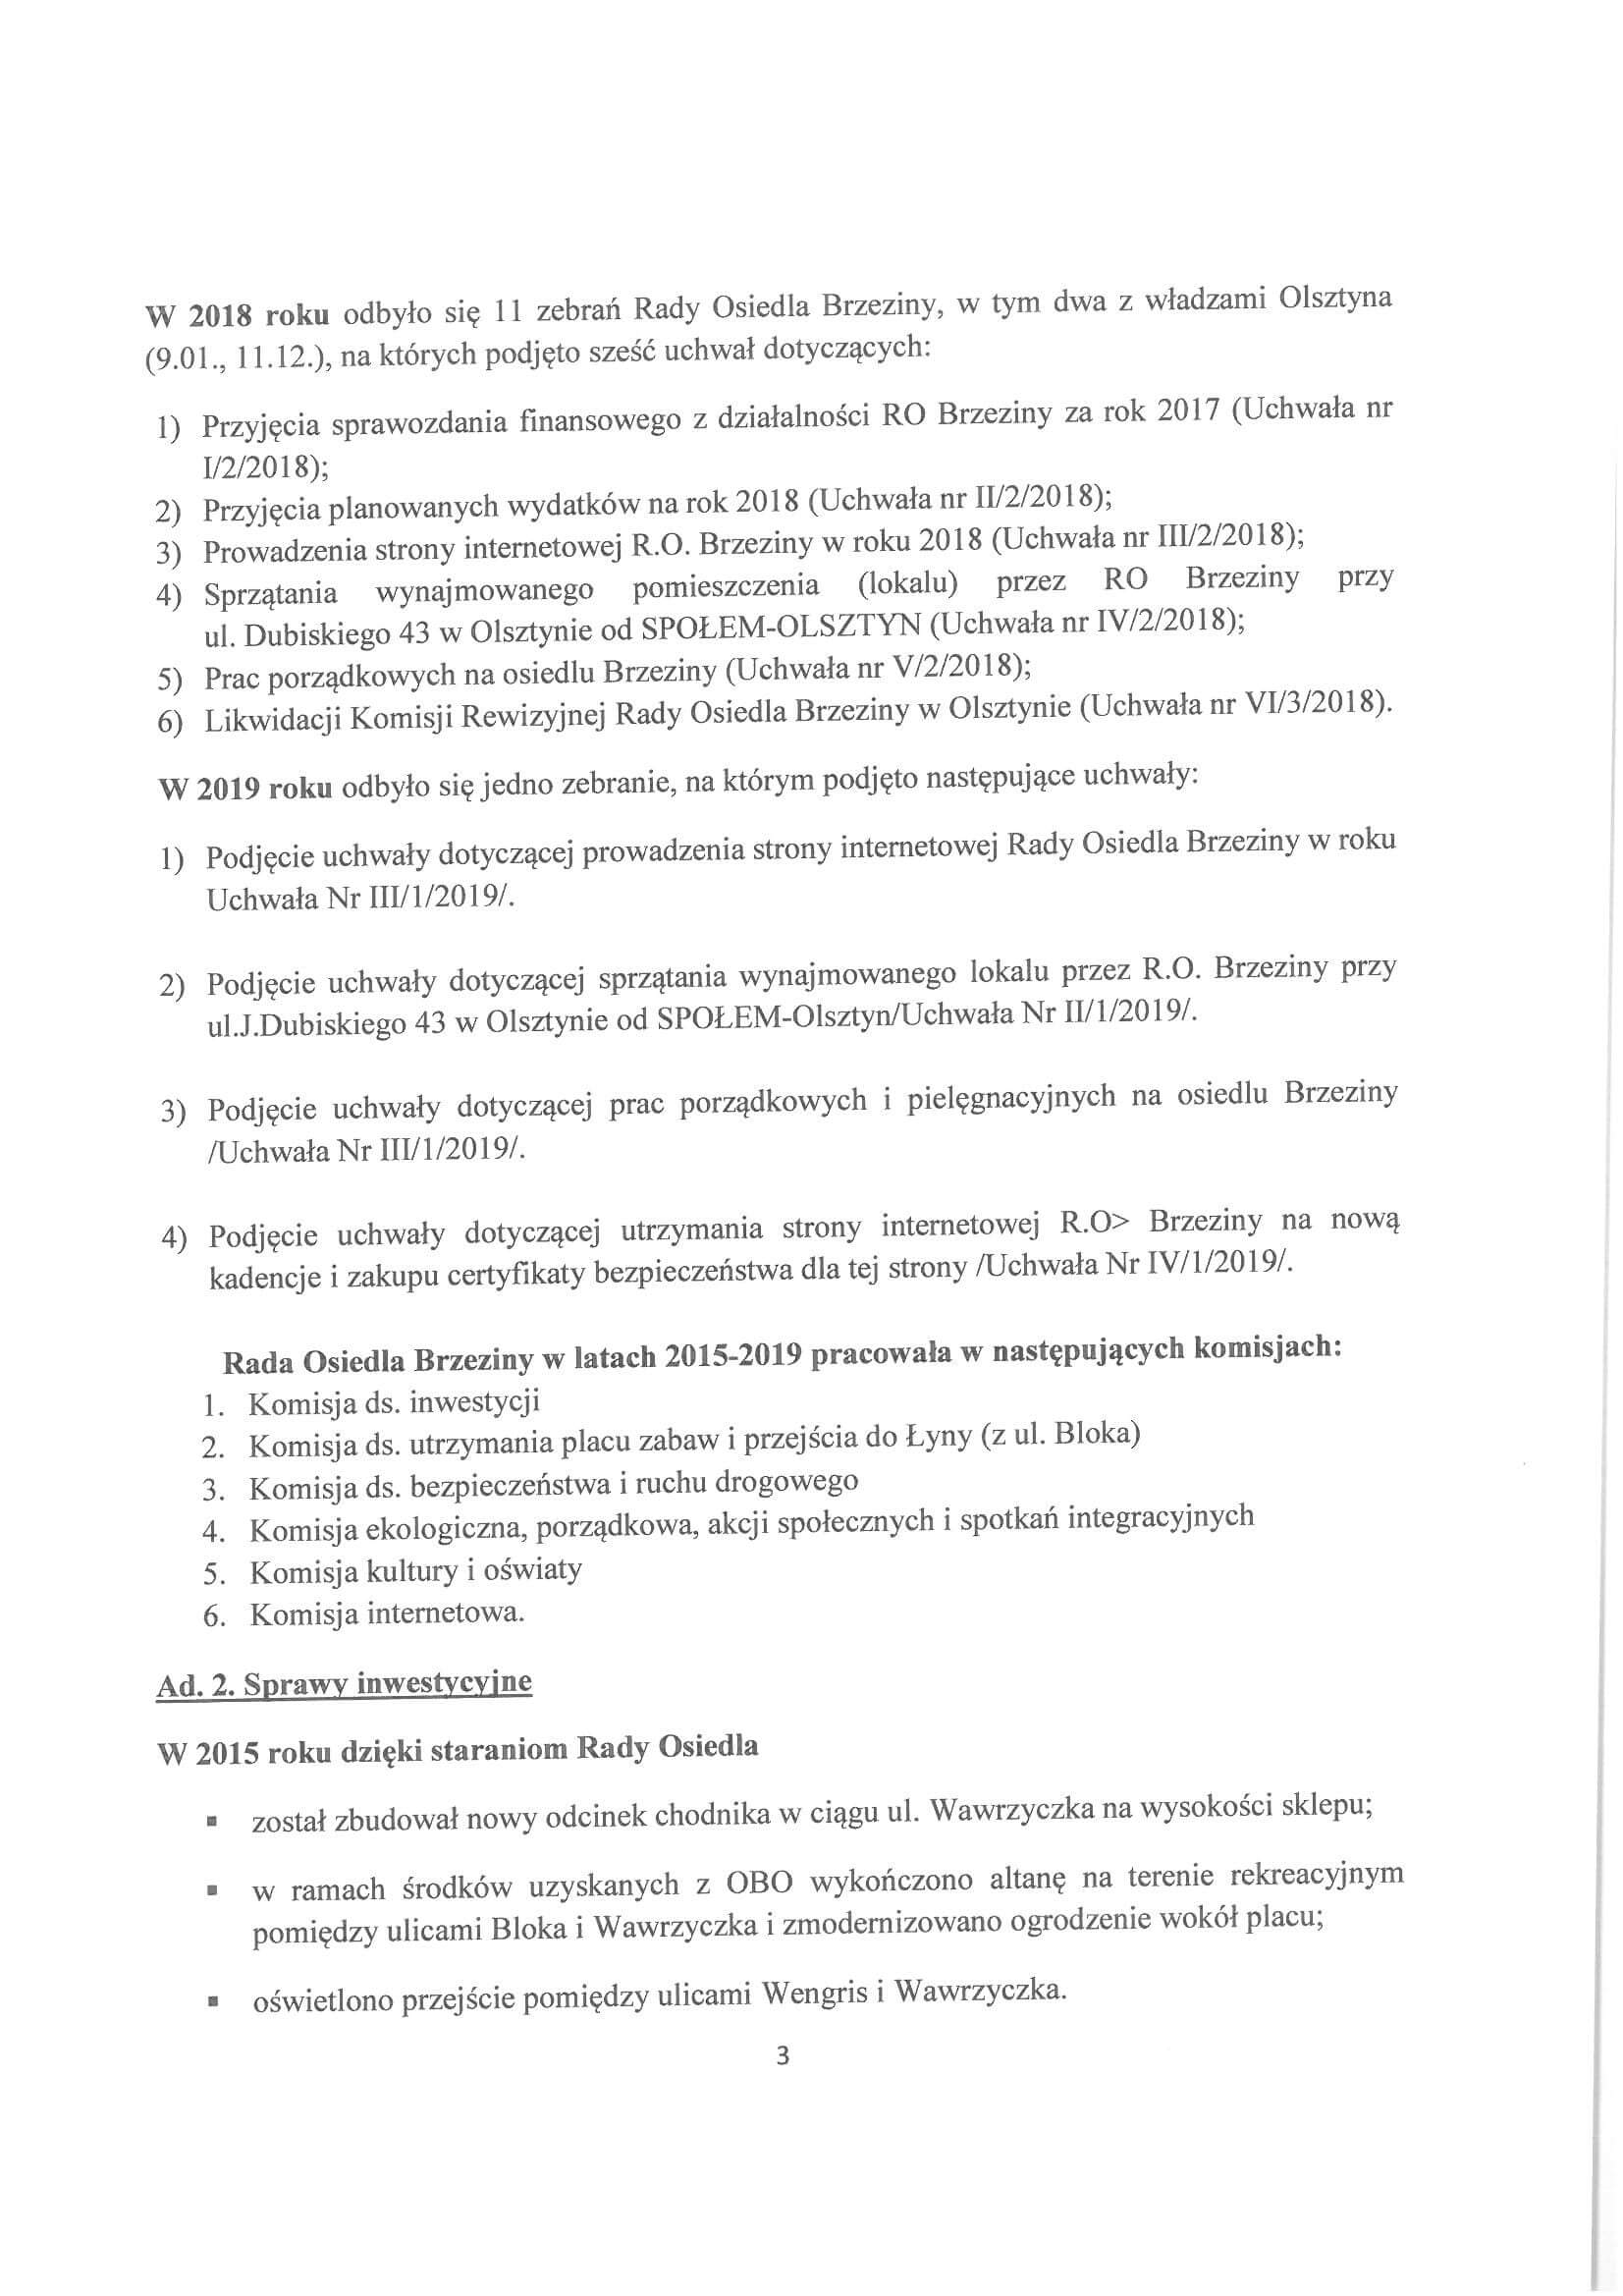 Sprawozdanie z działalności RO w latach 2015-2019-03